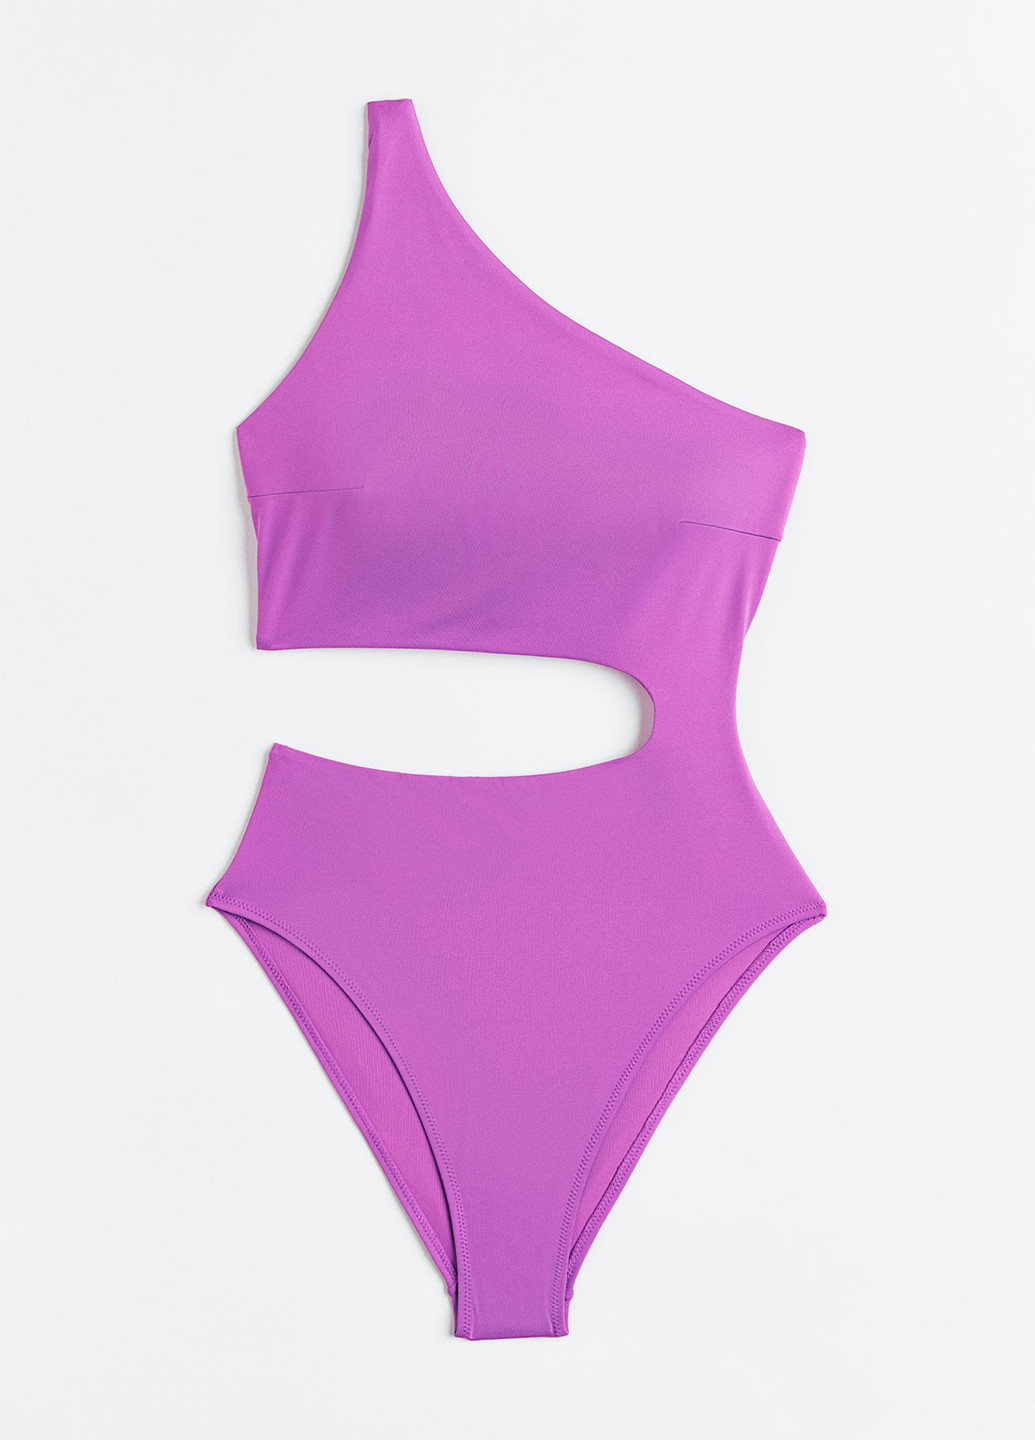 Фіолетовий літній купальник суцільний, танк, монокіні H&M